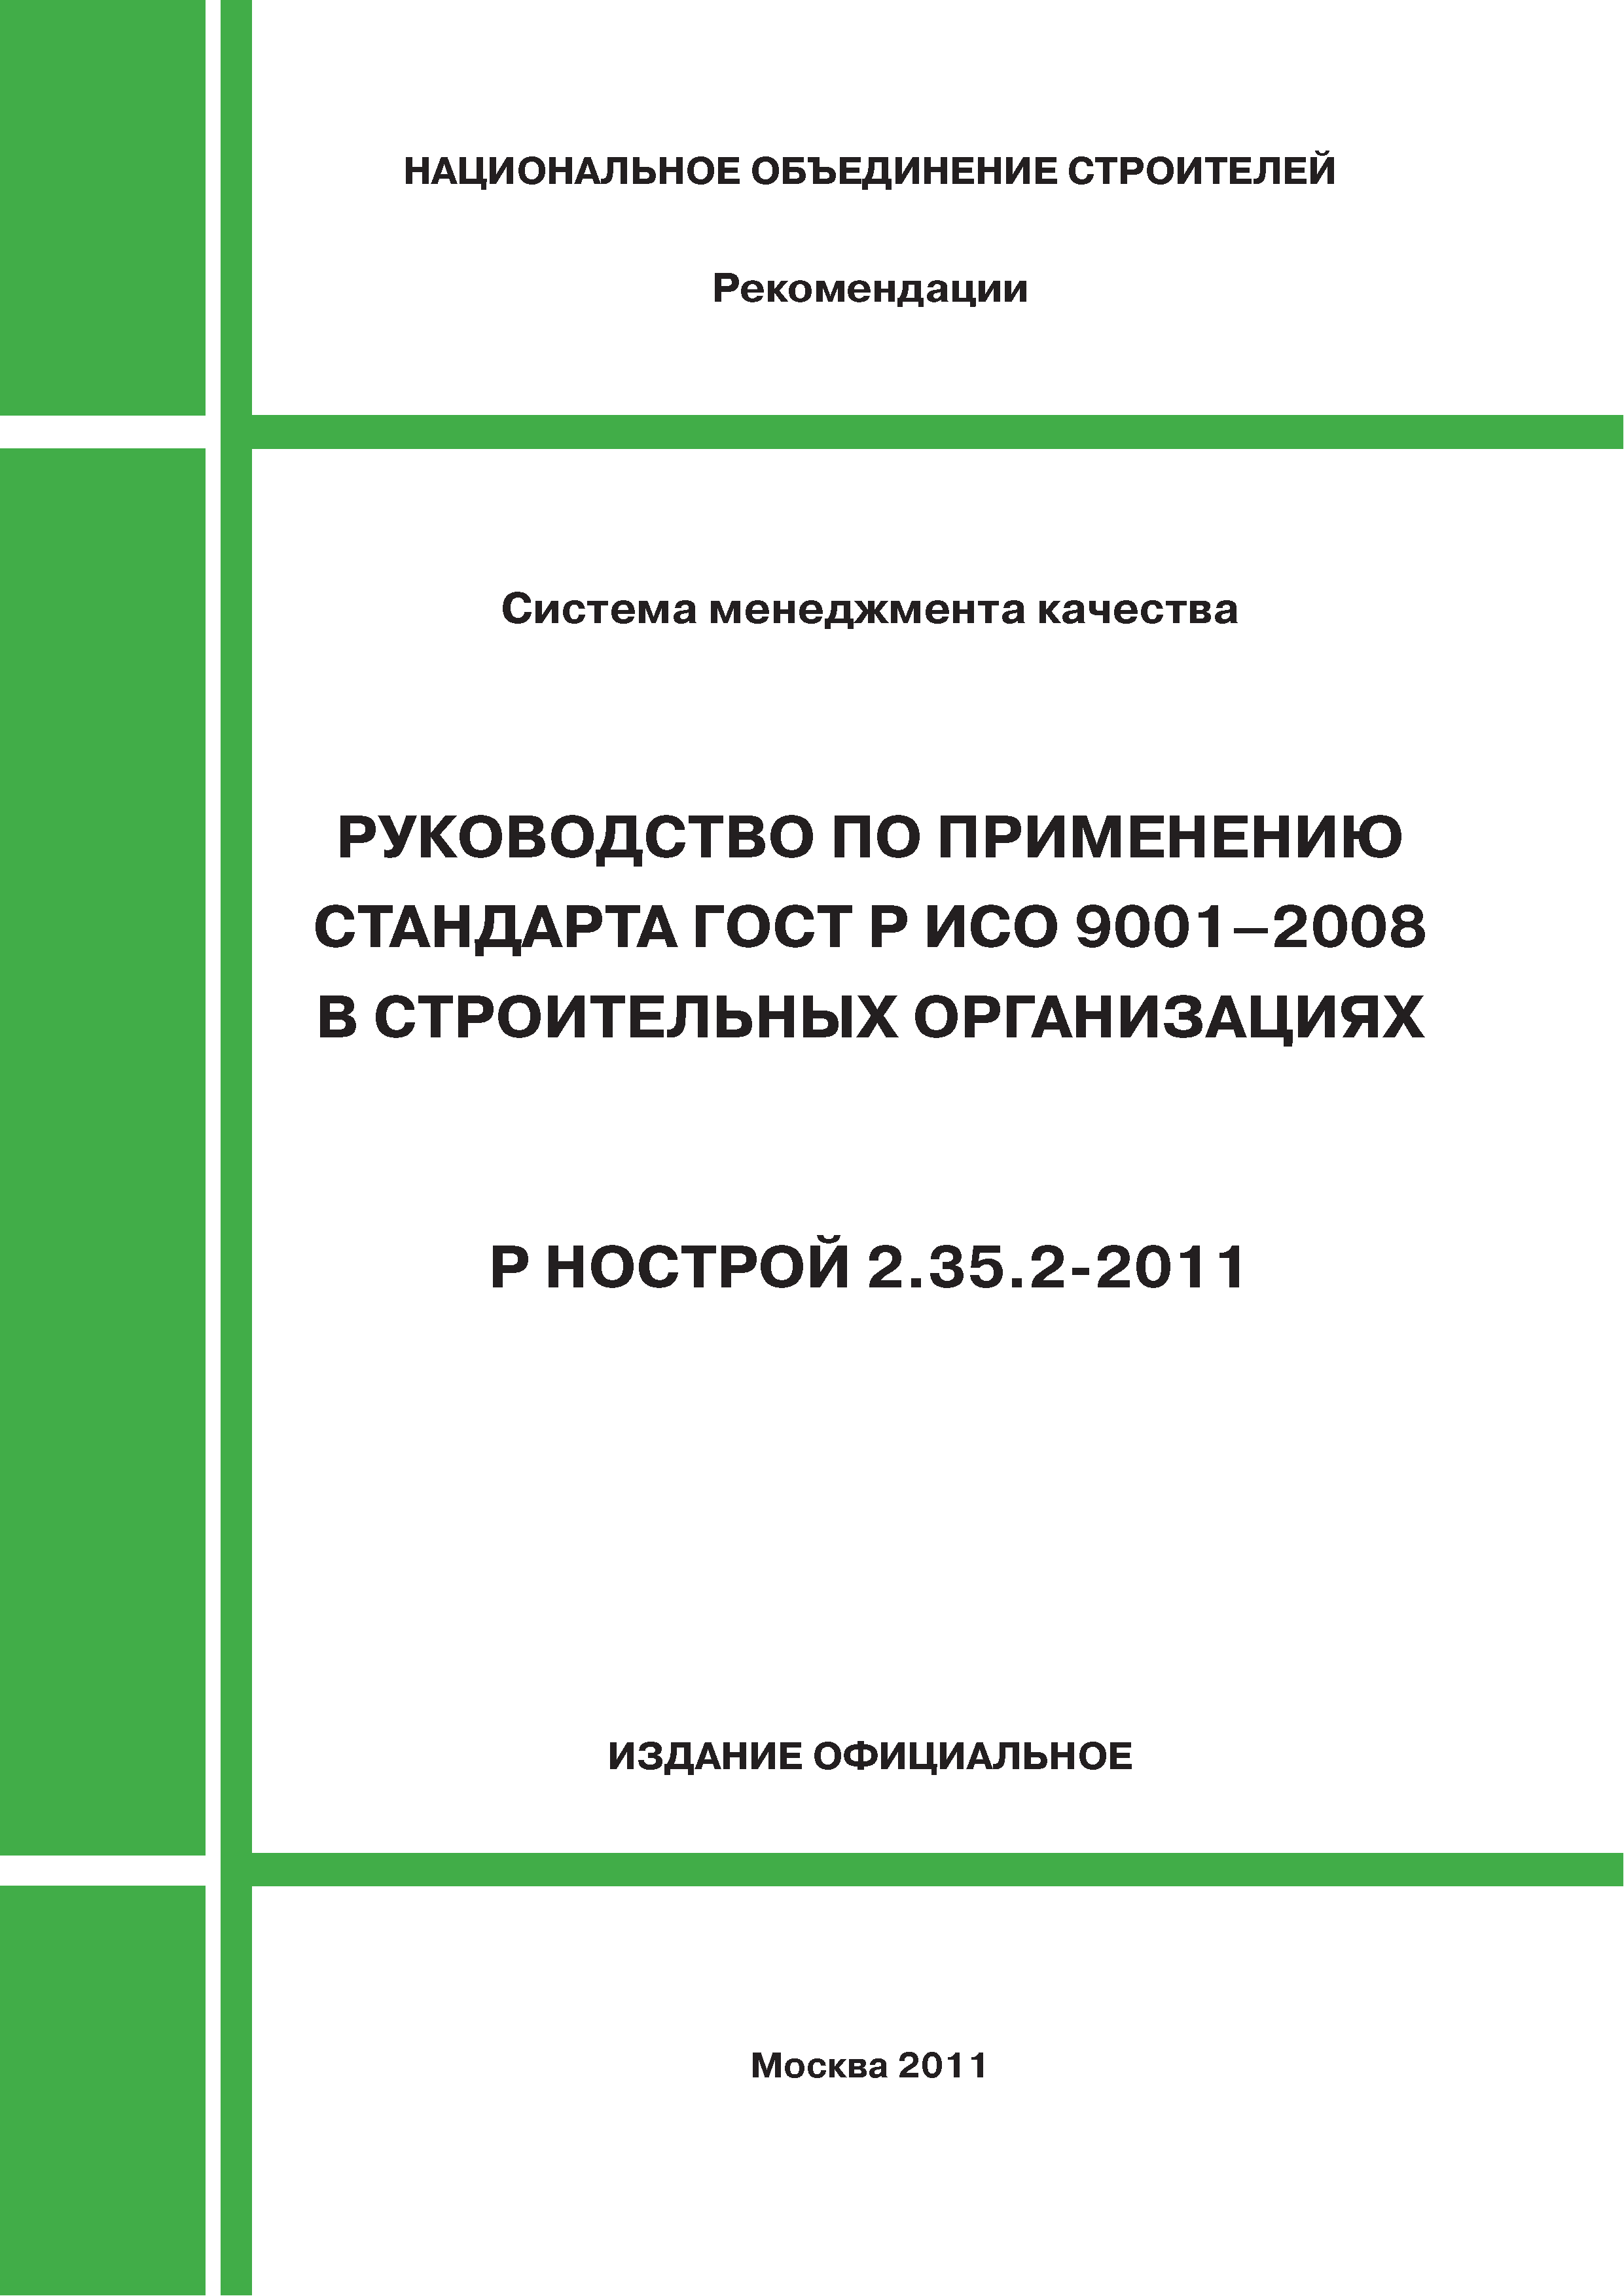 Р НОСТРОЙ 2.35.2-2011